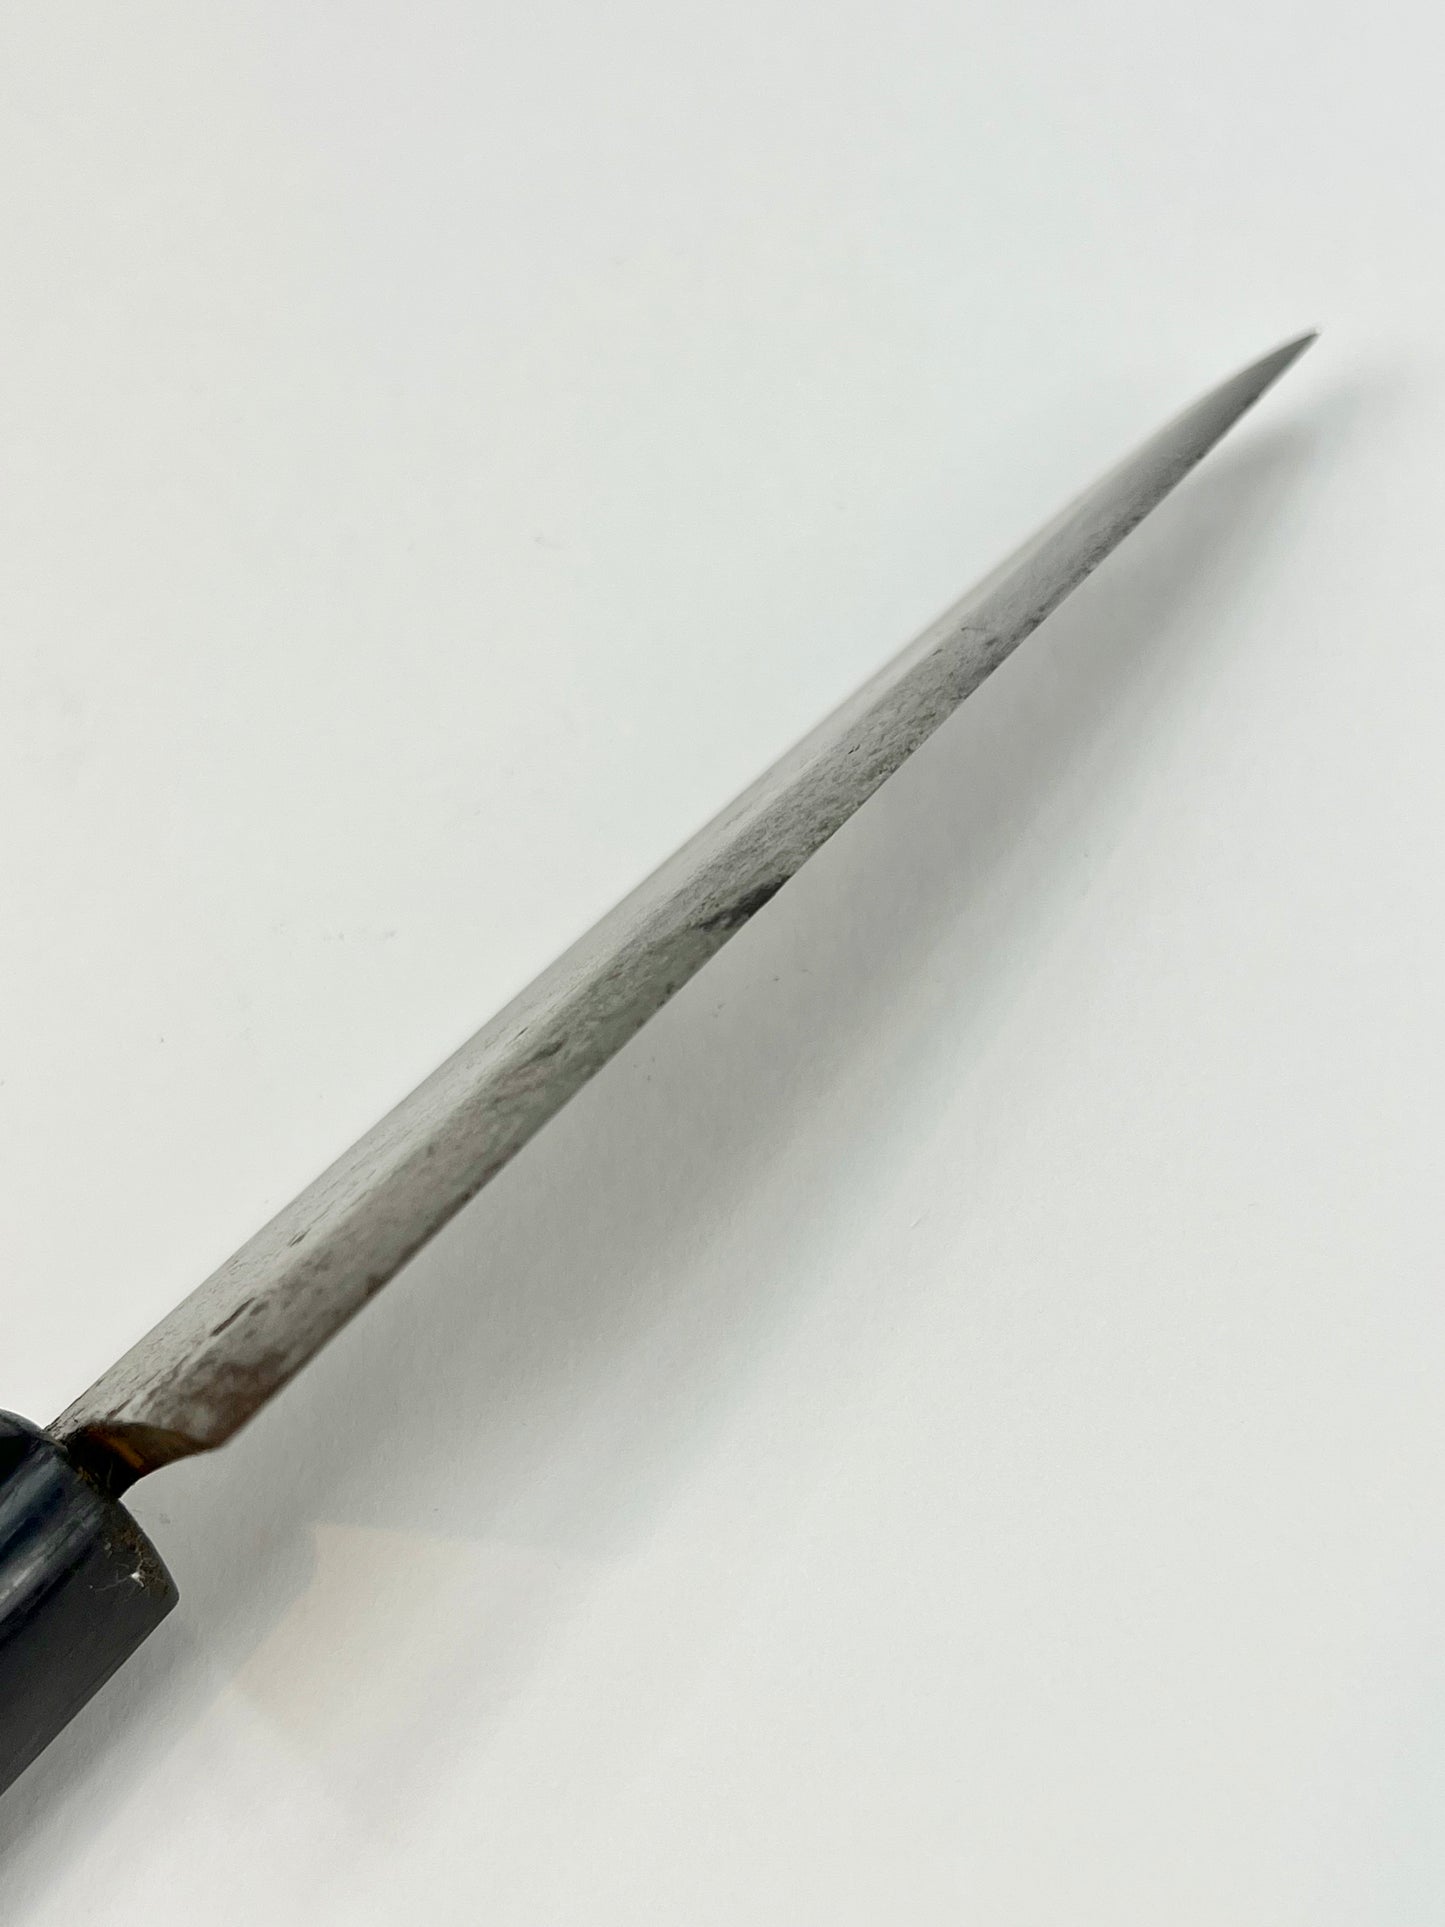 Vintage Japanese Signed Chef's Hocho Sushi 4.75" Knife Laminated Samurai Steel